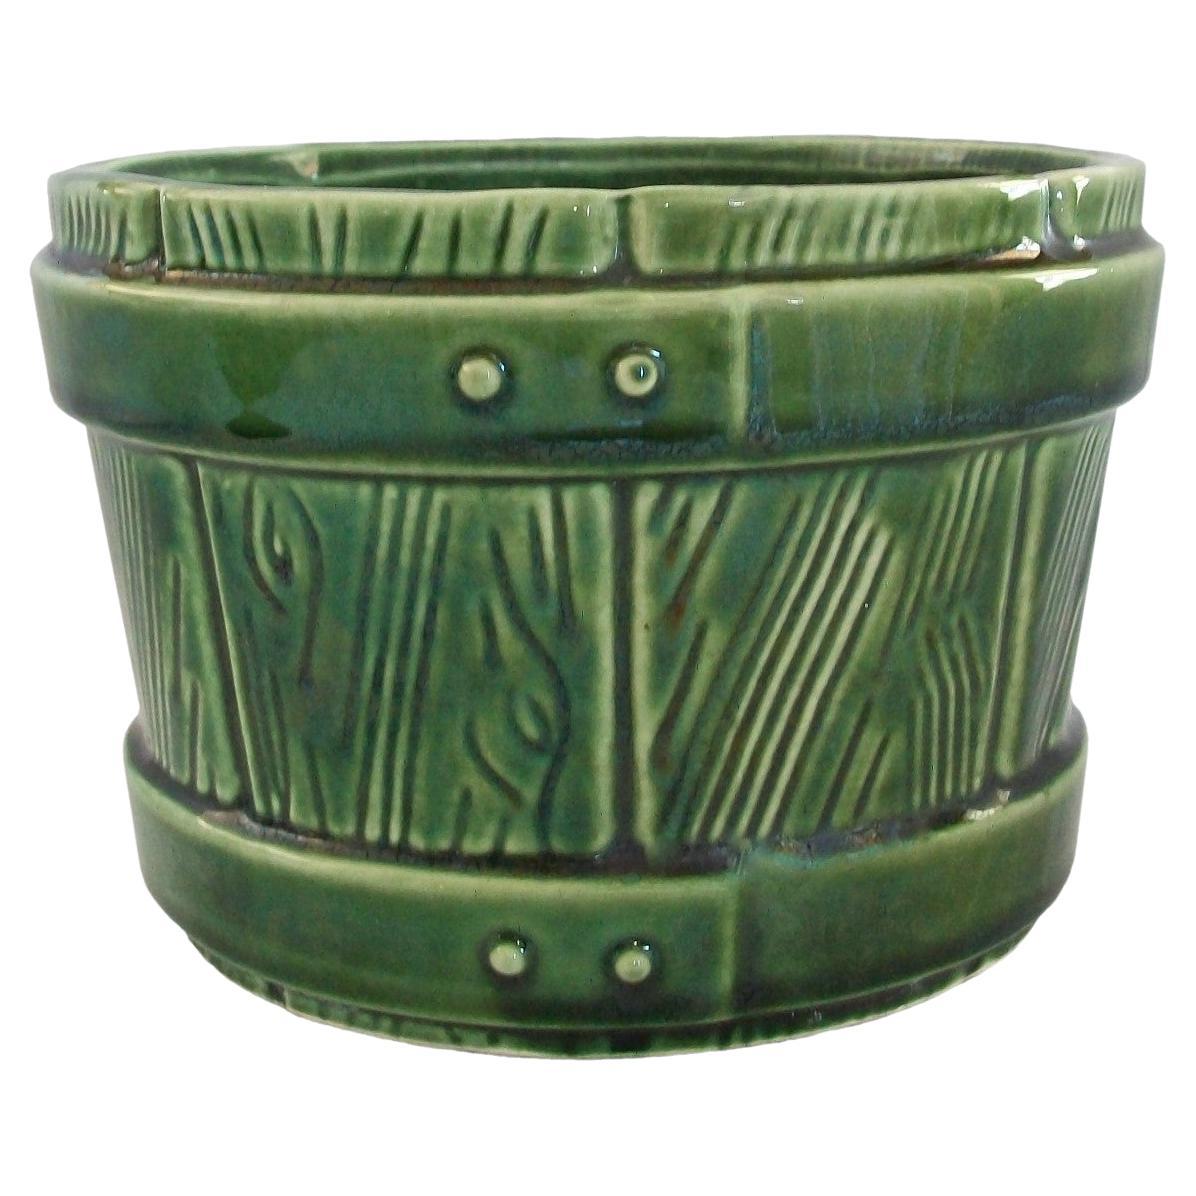 Ungemach Pottery Co., Vintage Ceramic 'Faux Bois' Planter, U.S., circa 1950s